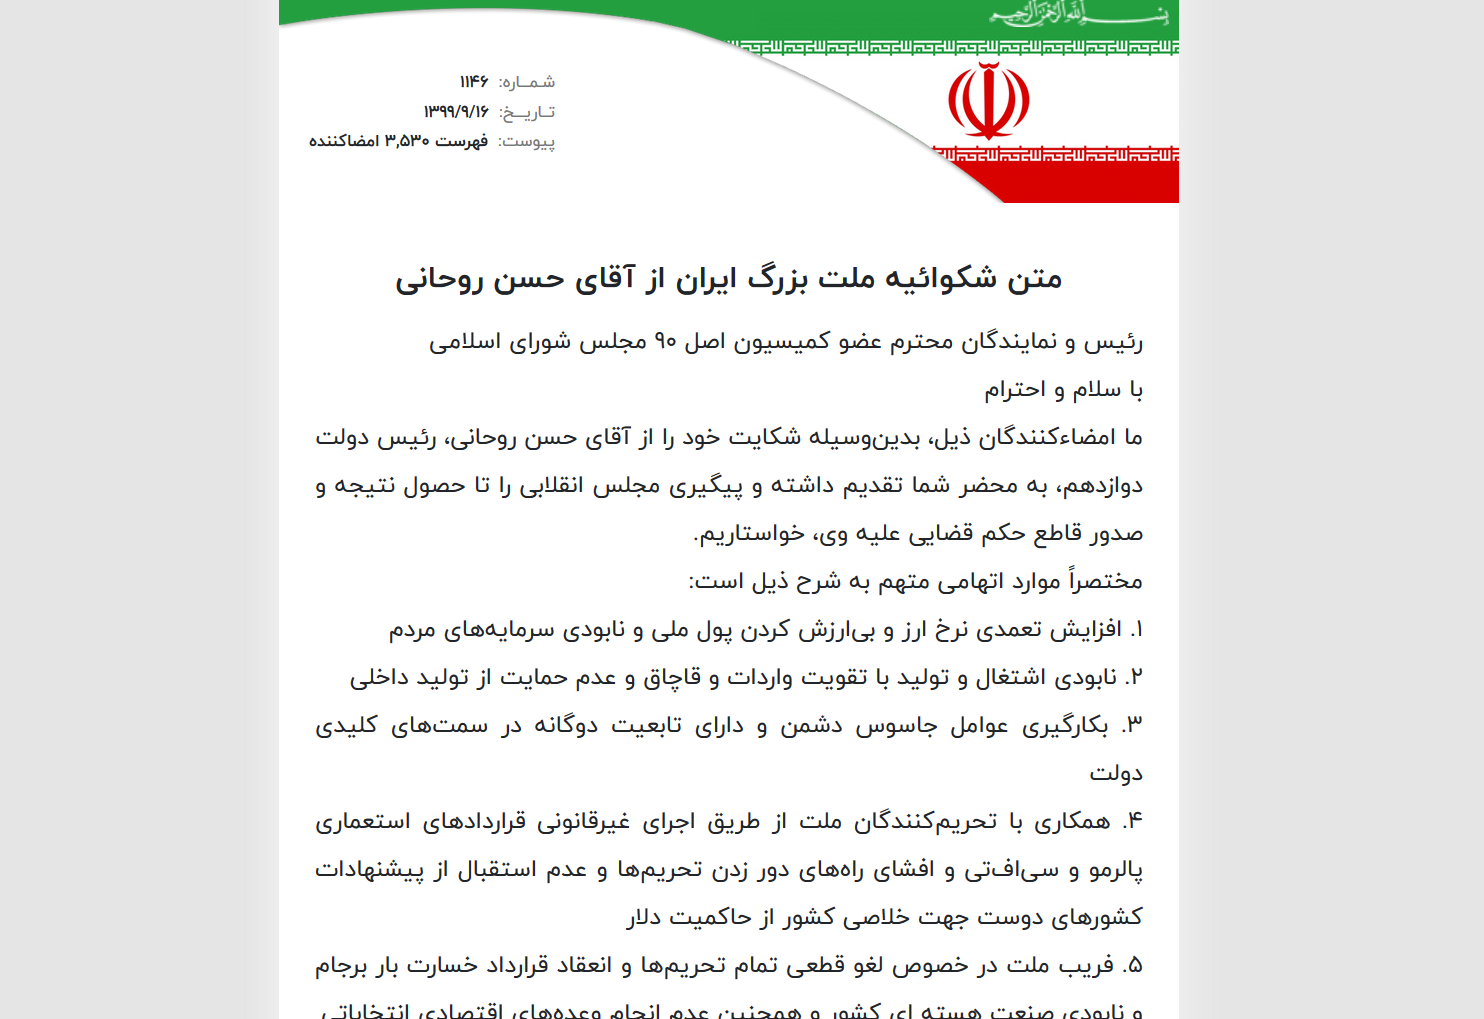 مشارکت در شکوائیه ملت بزرگ ایران از آقای حسن روحانی